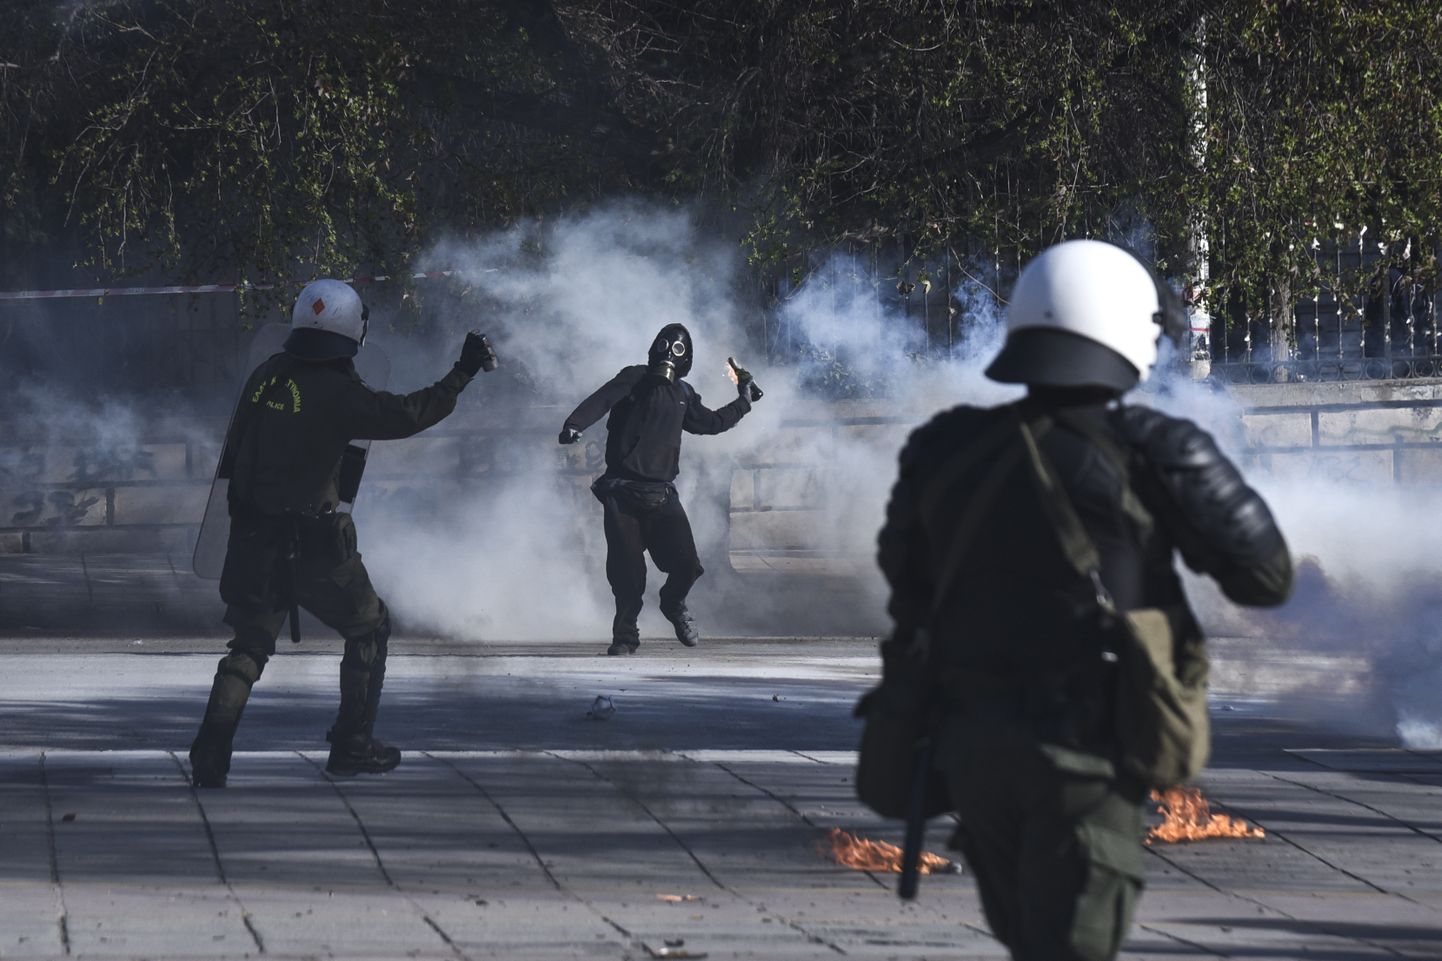 Kreeka politsei kähmles vasakäärmuslastega.